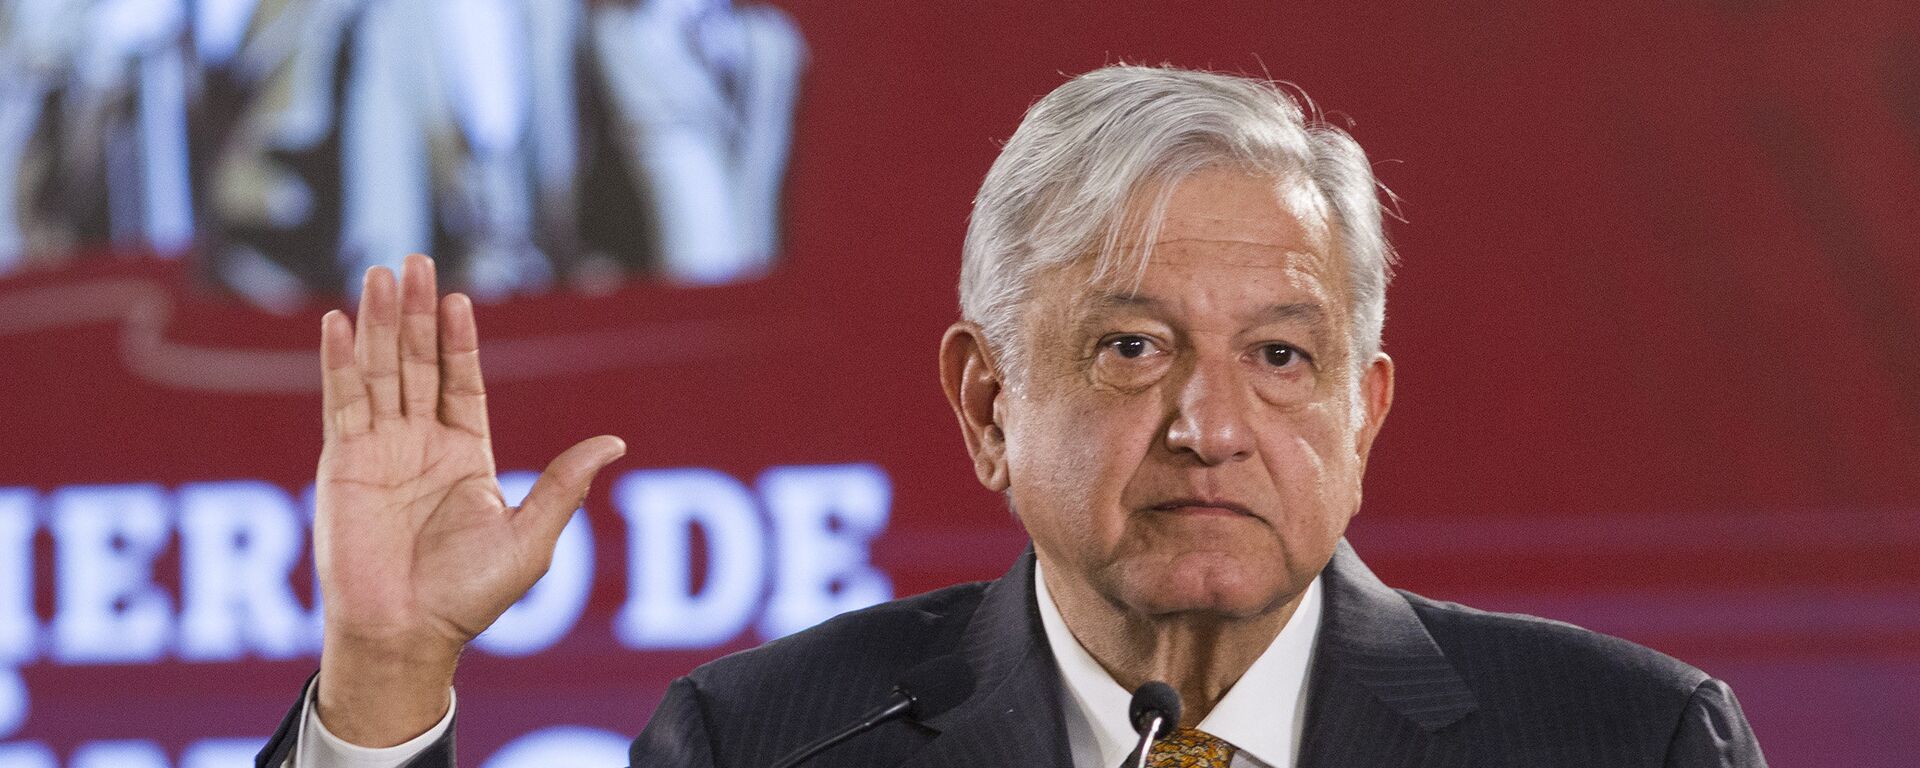 Andrés Manuel López Obrador, presidente de México  - Sputnik Mundo, 1920, 06.09.2021